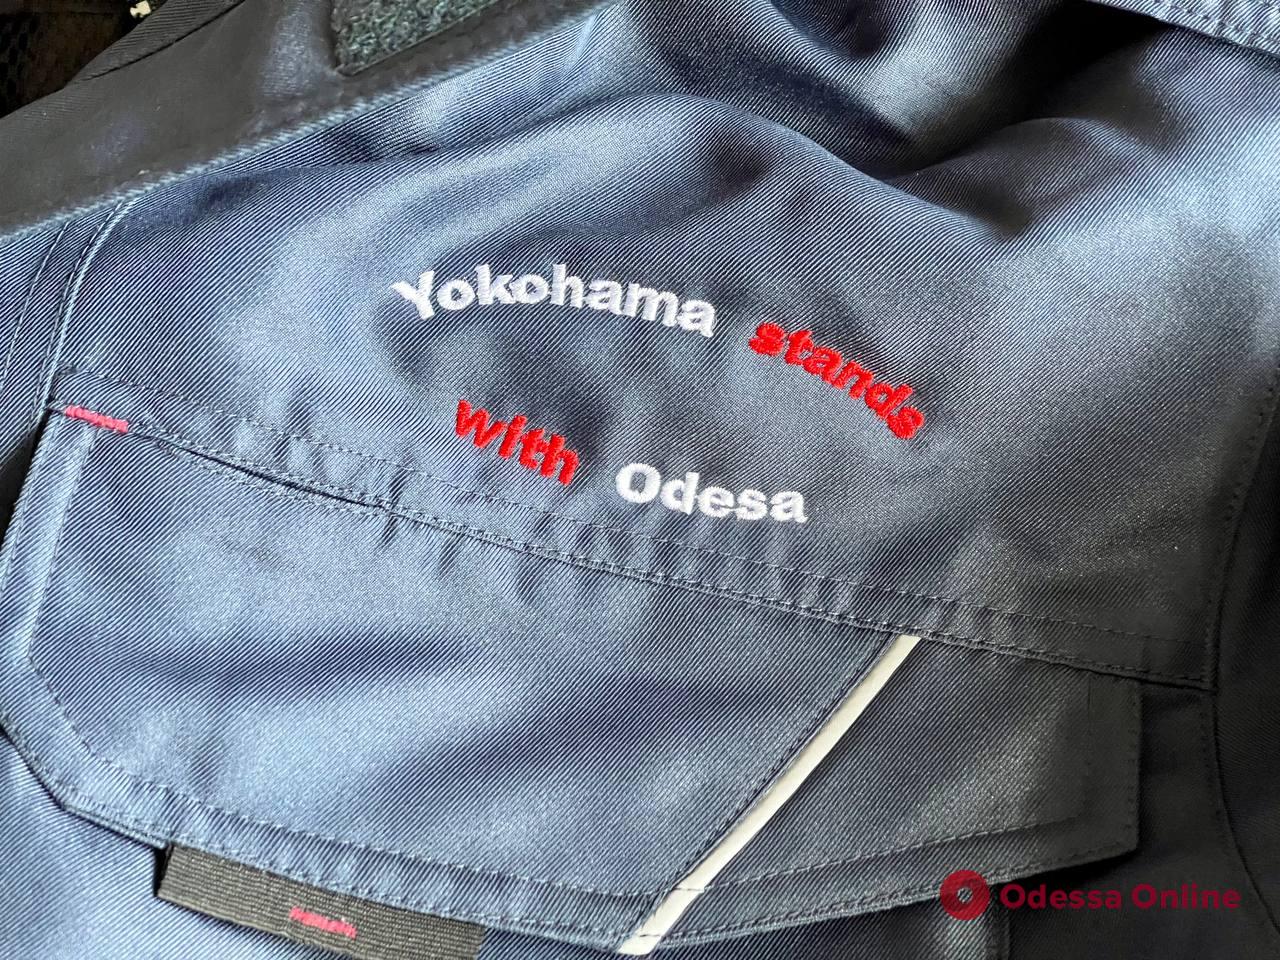 Одесса получила очередной гуманитарный груз от Иокогамы (фото)